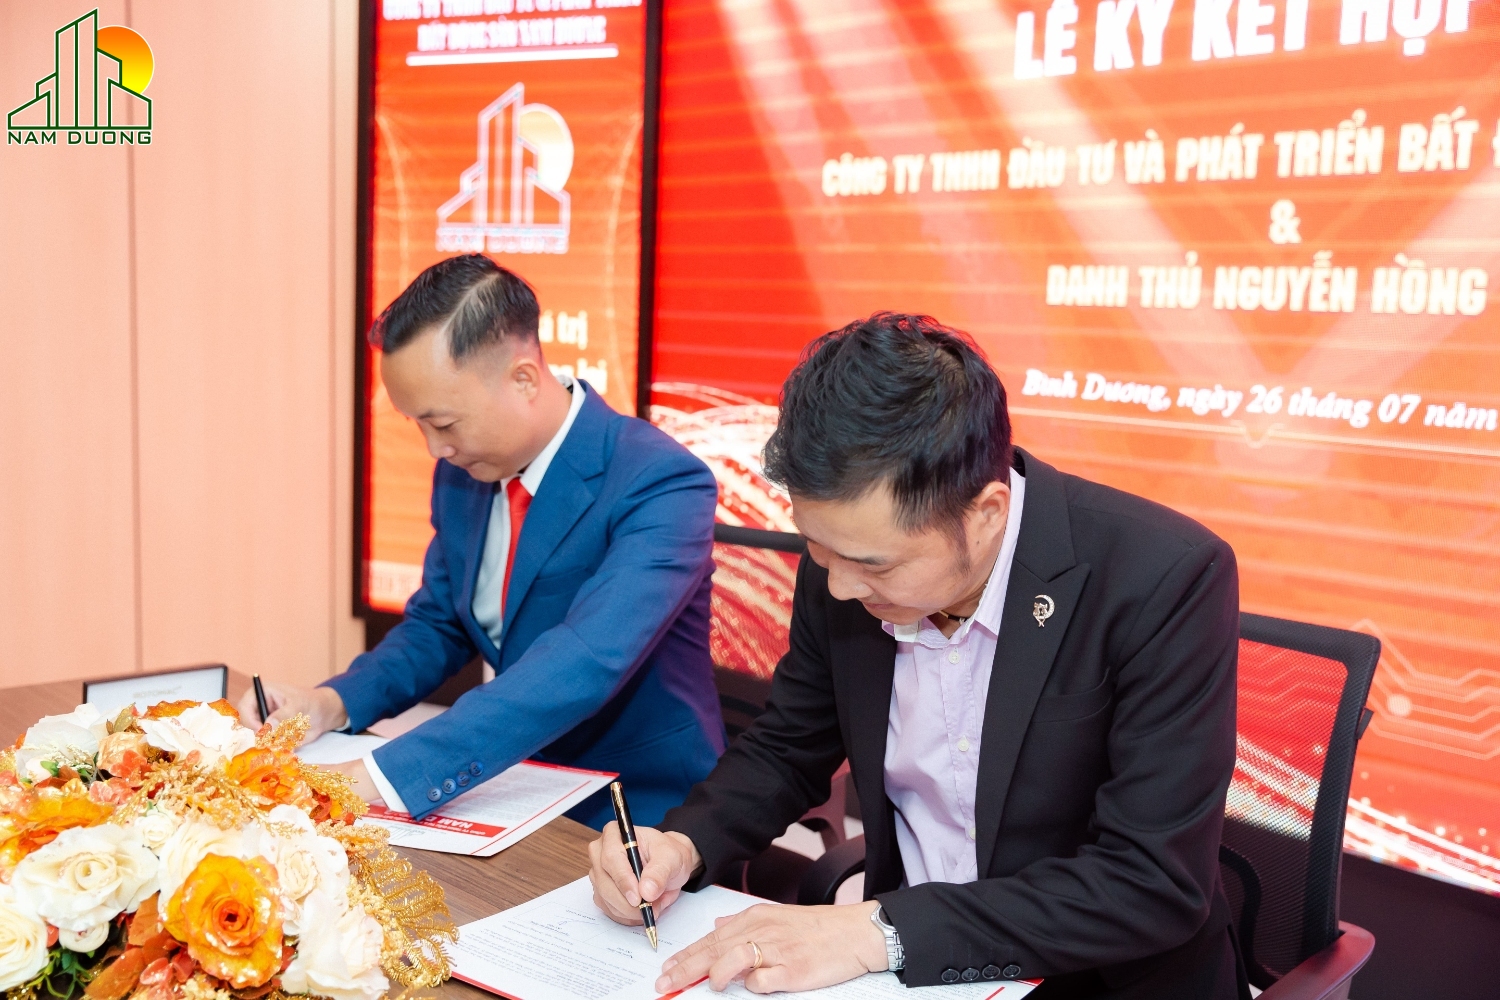 lễ ký kết bổ nhiệm danh thủ Nguyễn Hồng Sơn 2